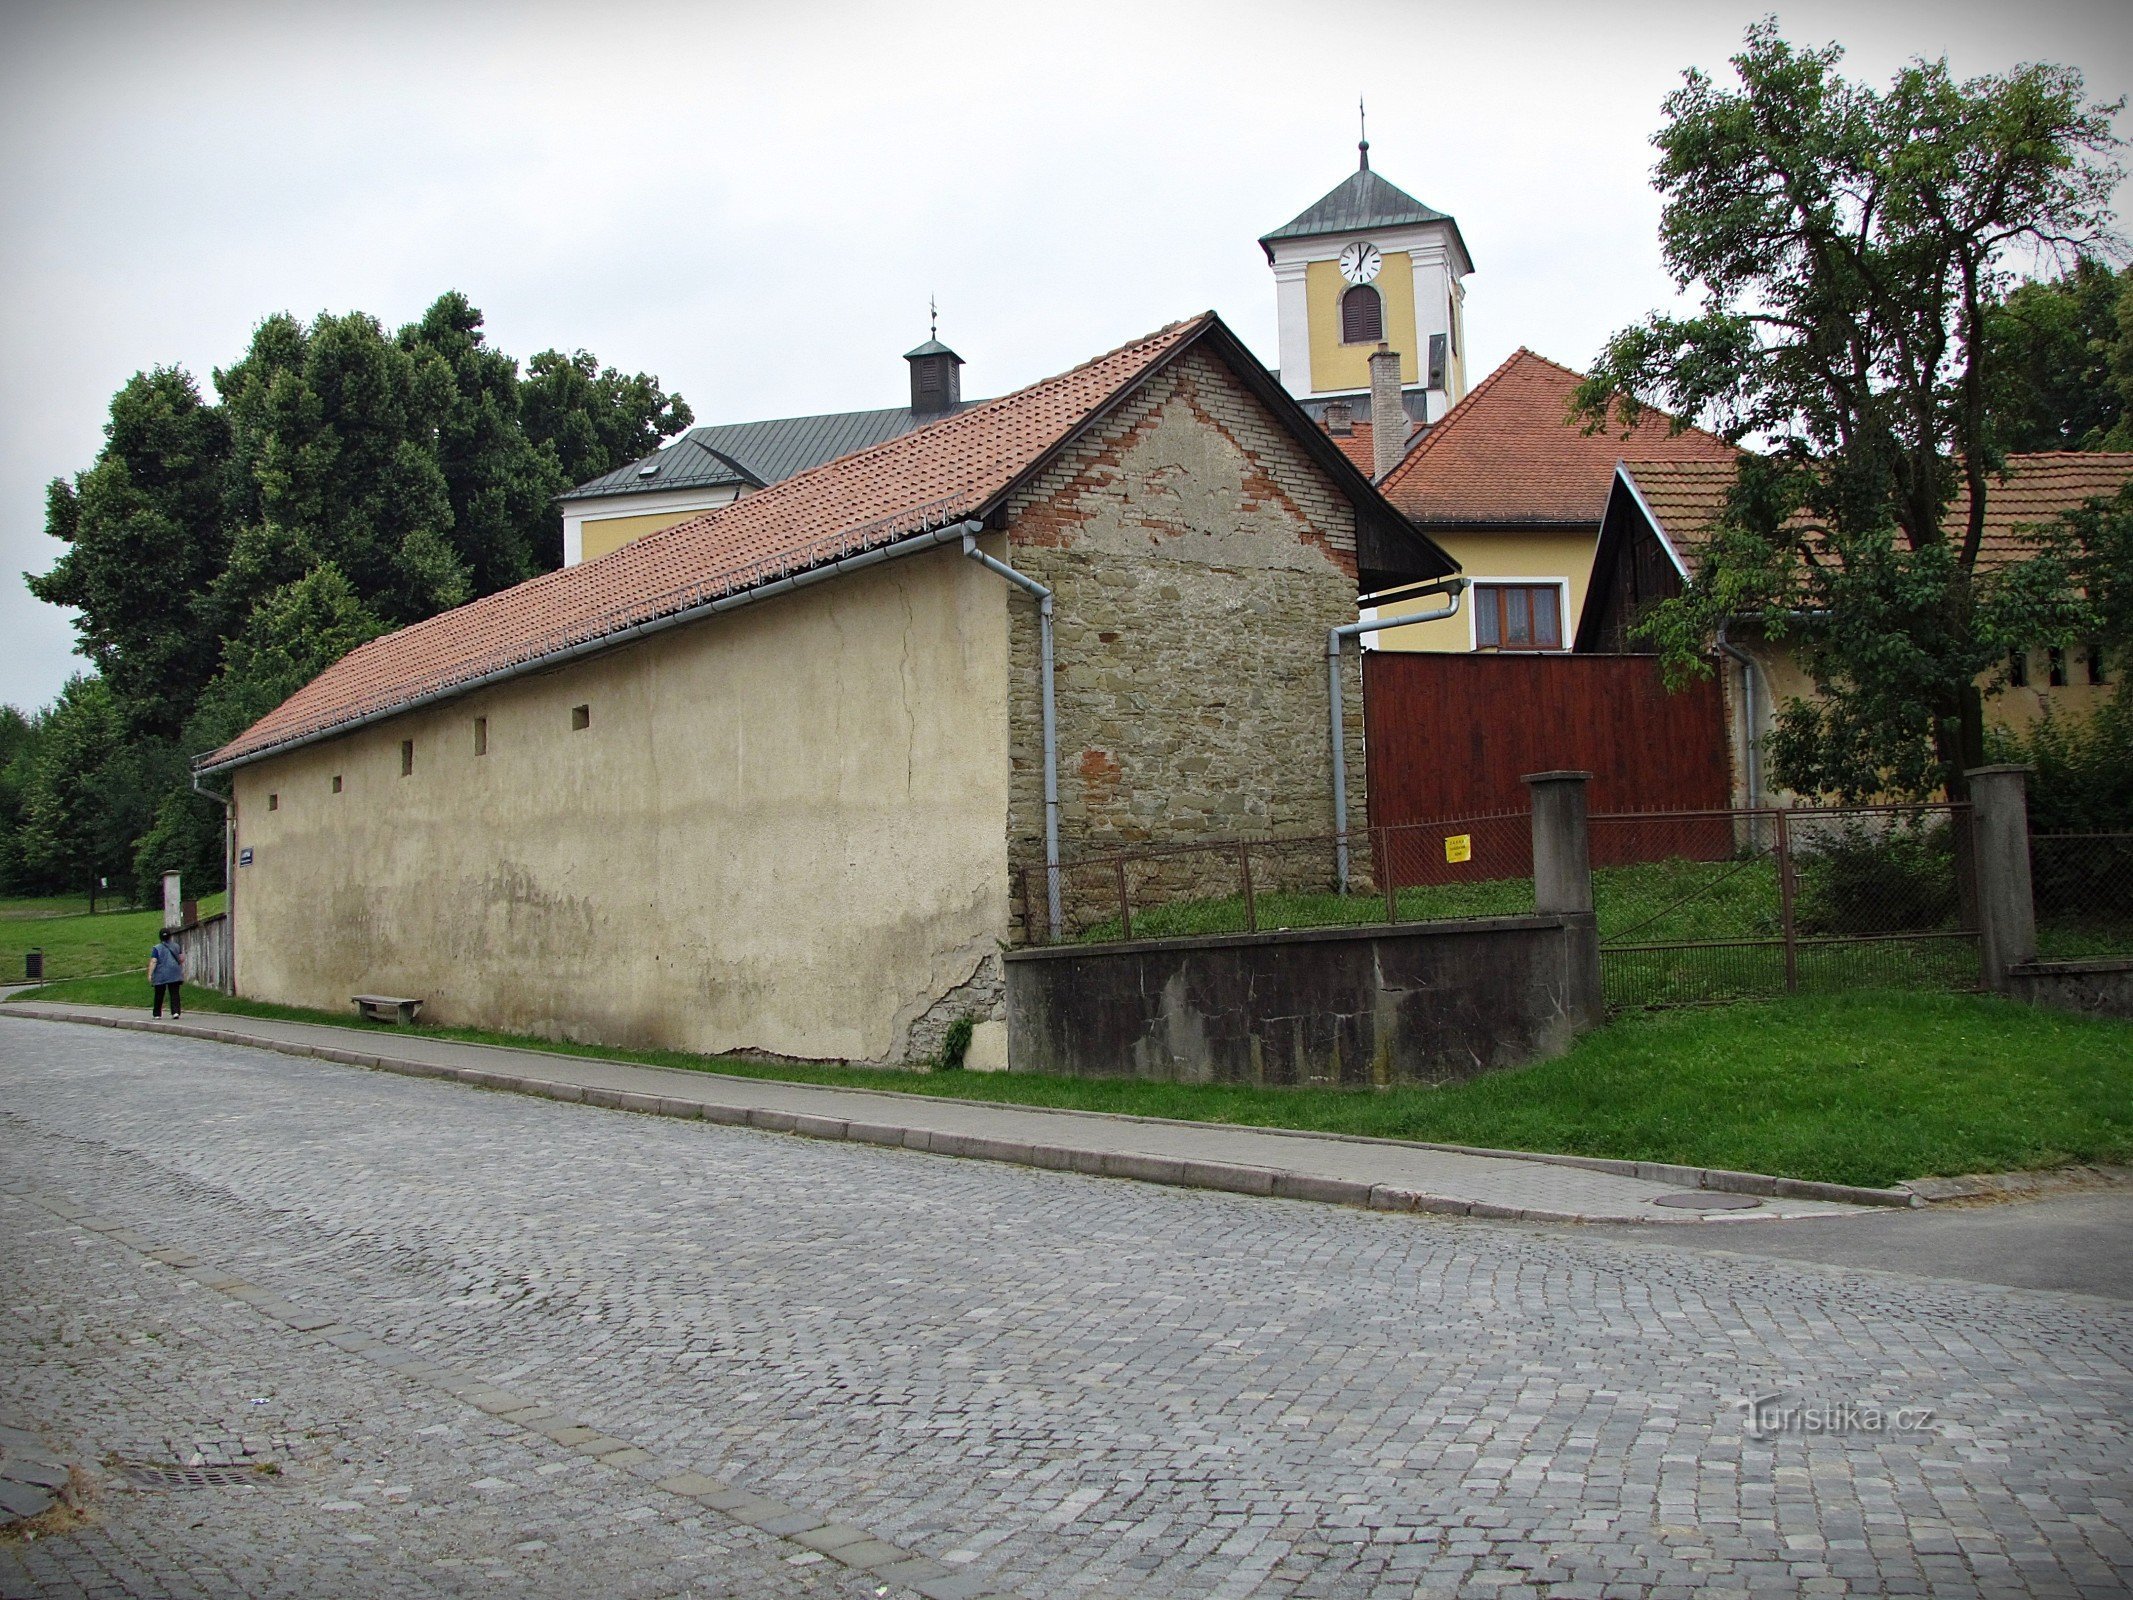 Church of St. Peter and Paul in Želechovice n. Dřevnicí